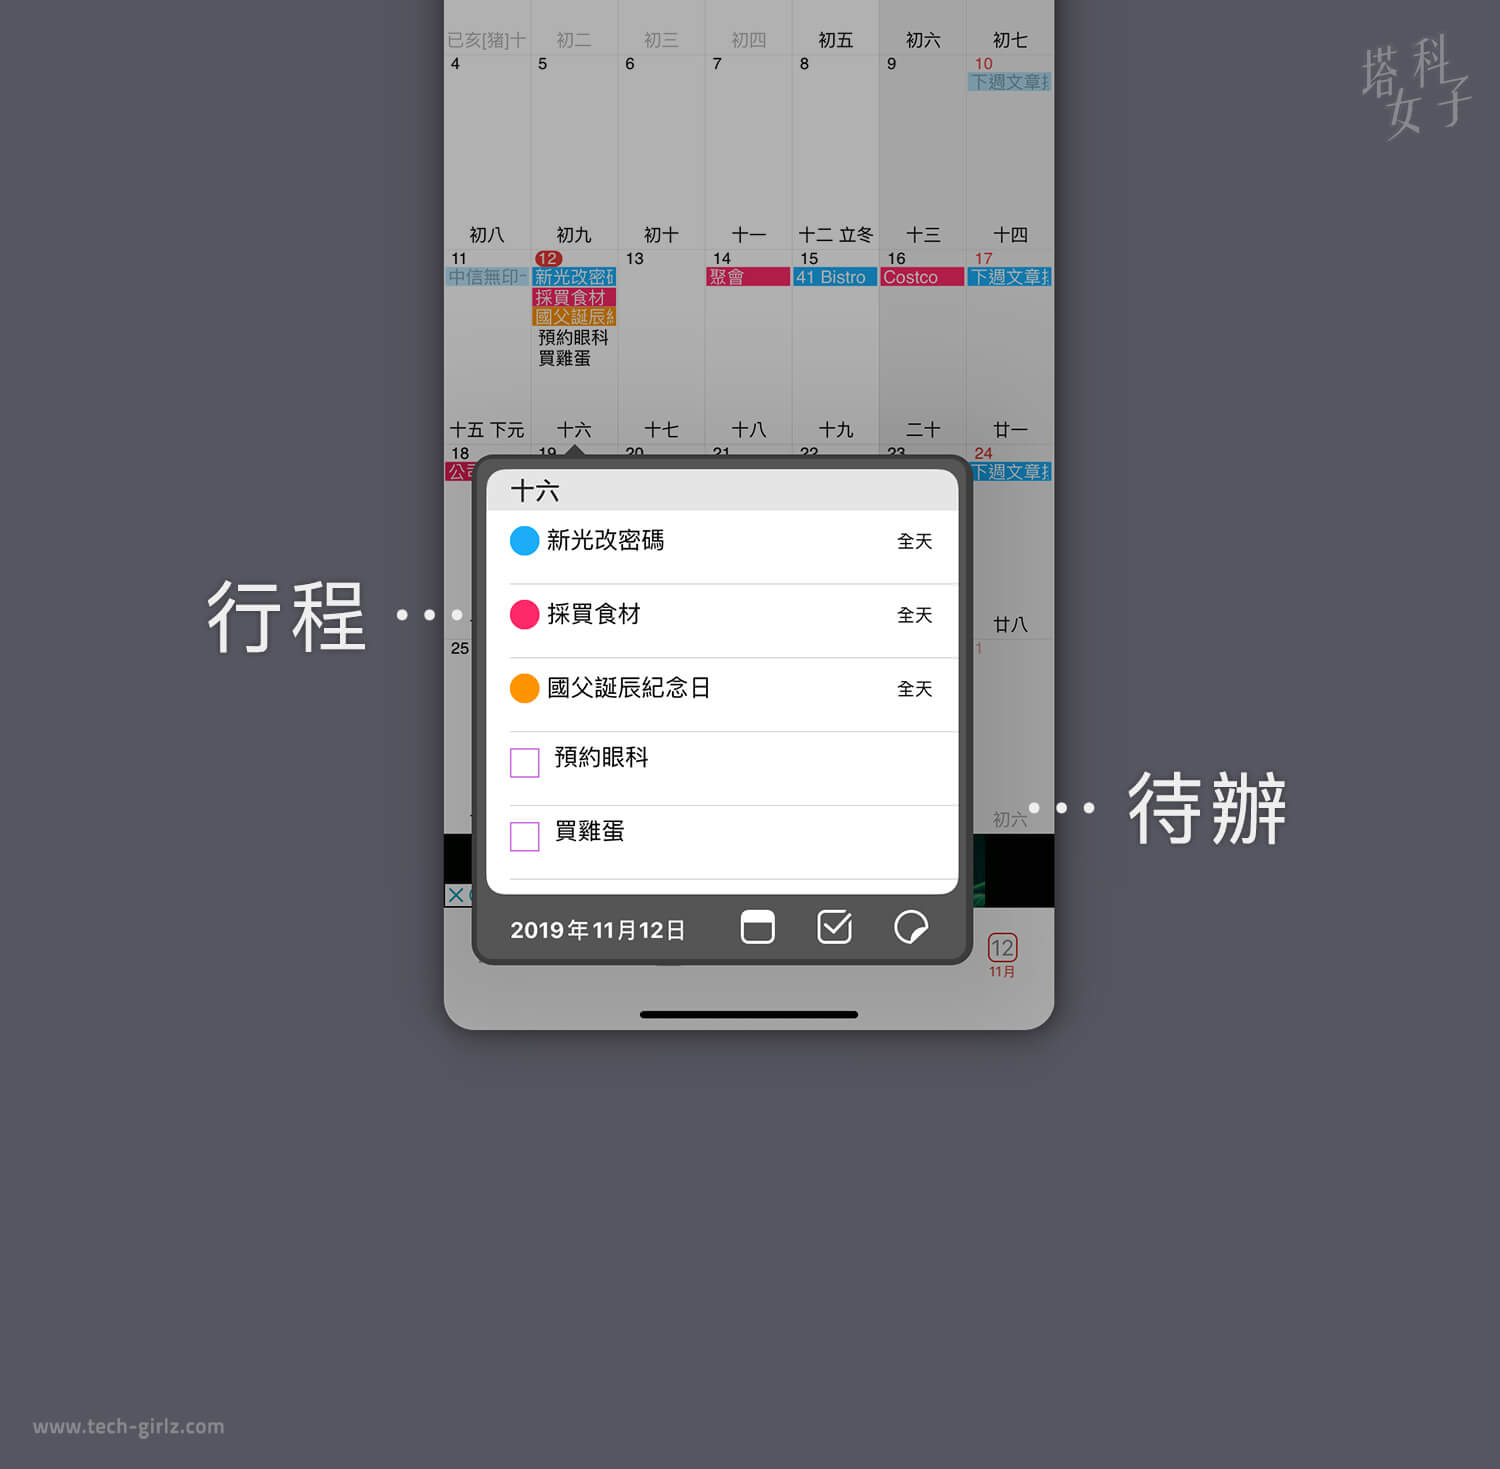 行事曆 App 推薦，WidgetCal